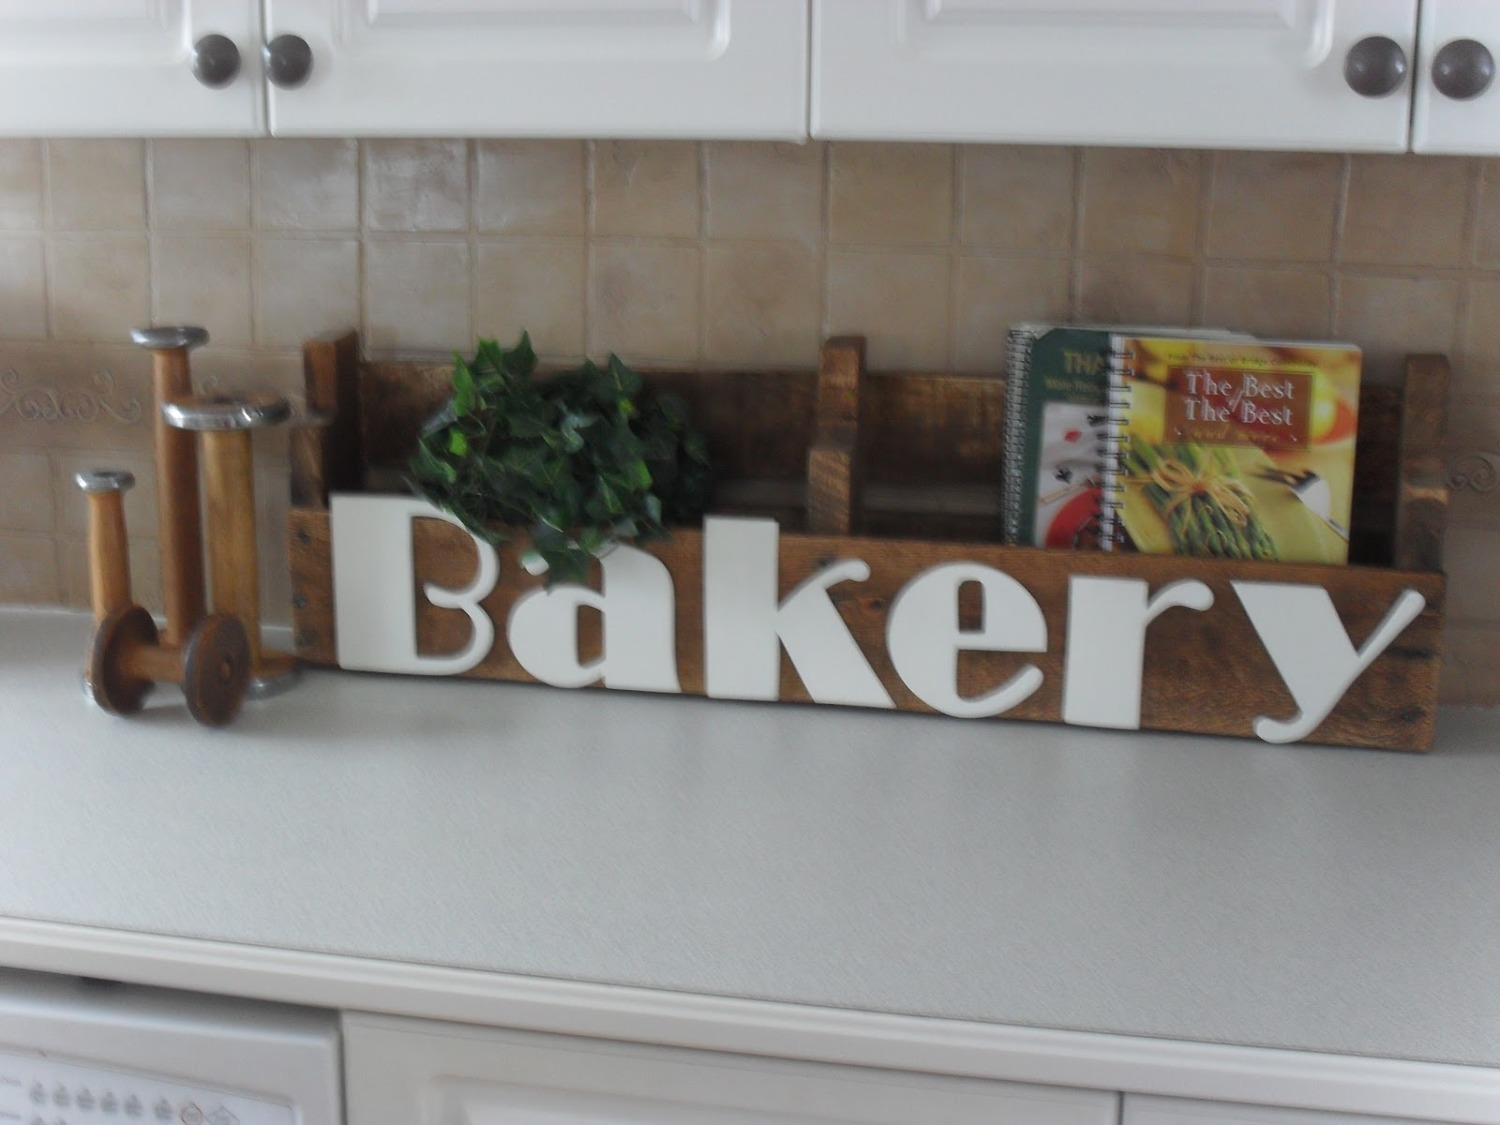 Bakery font?